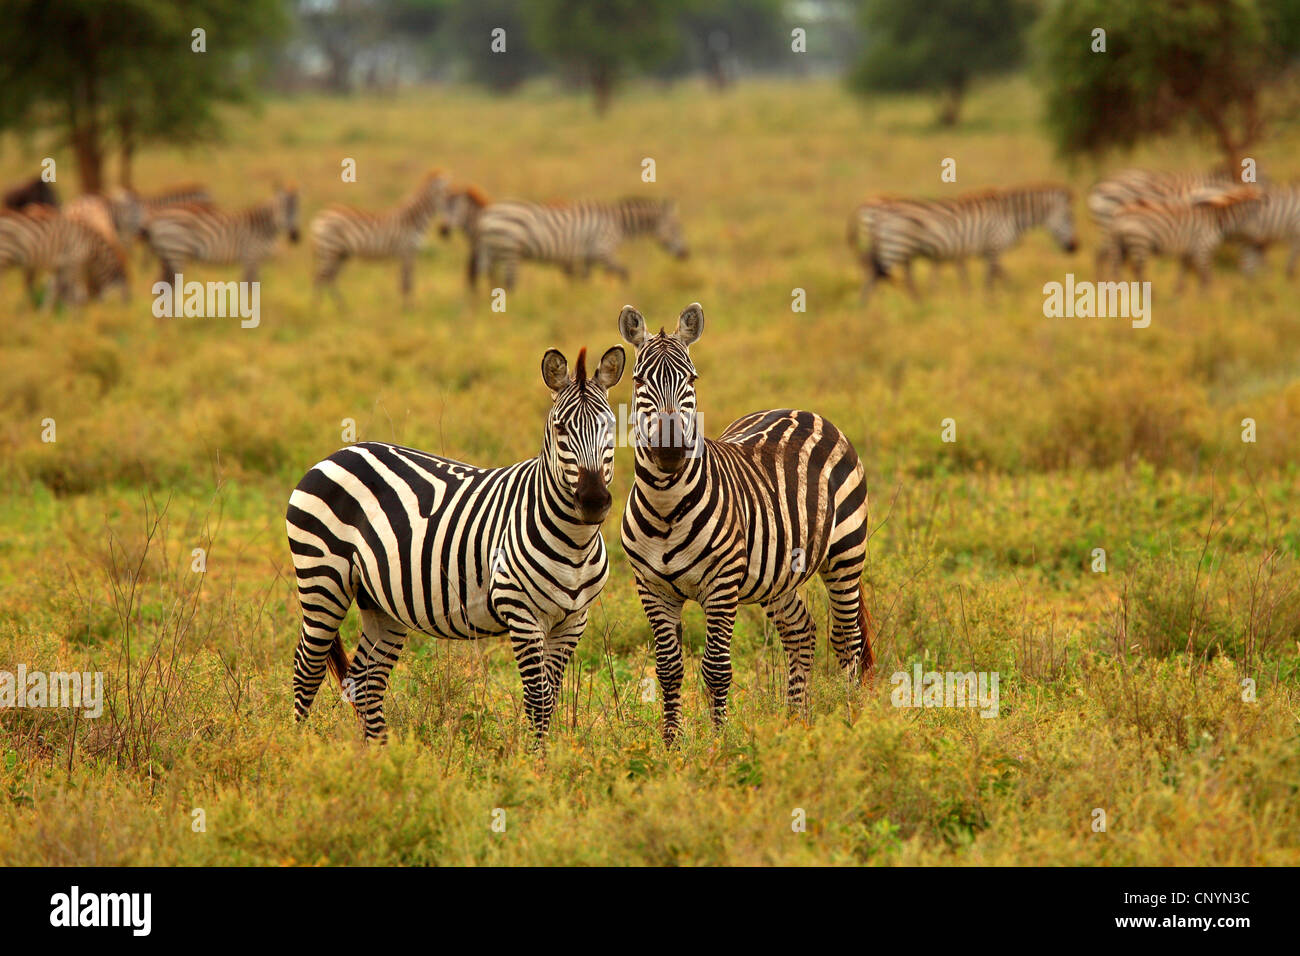 Le zèbre de Boehm, Grant's zebra (Equus quagga boehmi Equus quagga, granti), deux zèbres debout dans la savane, Tanzanie, Serengeti Banque D'Images